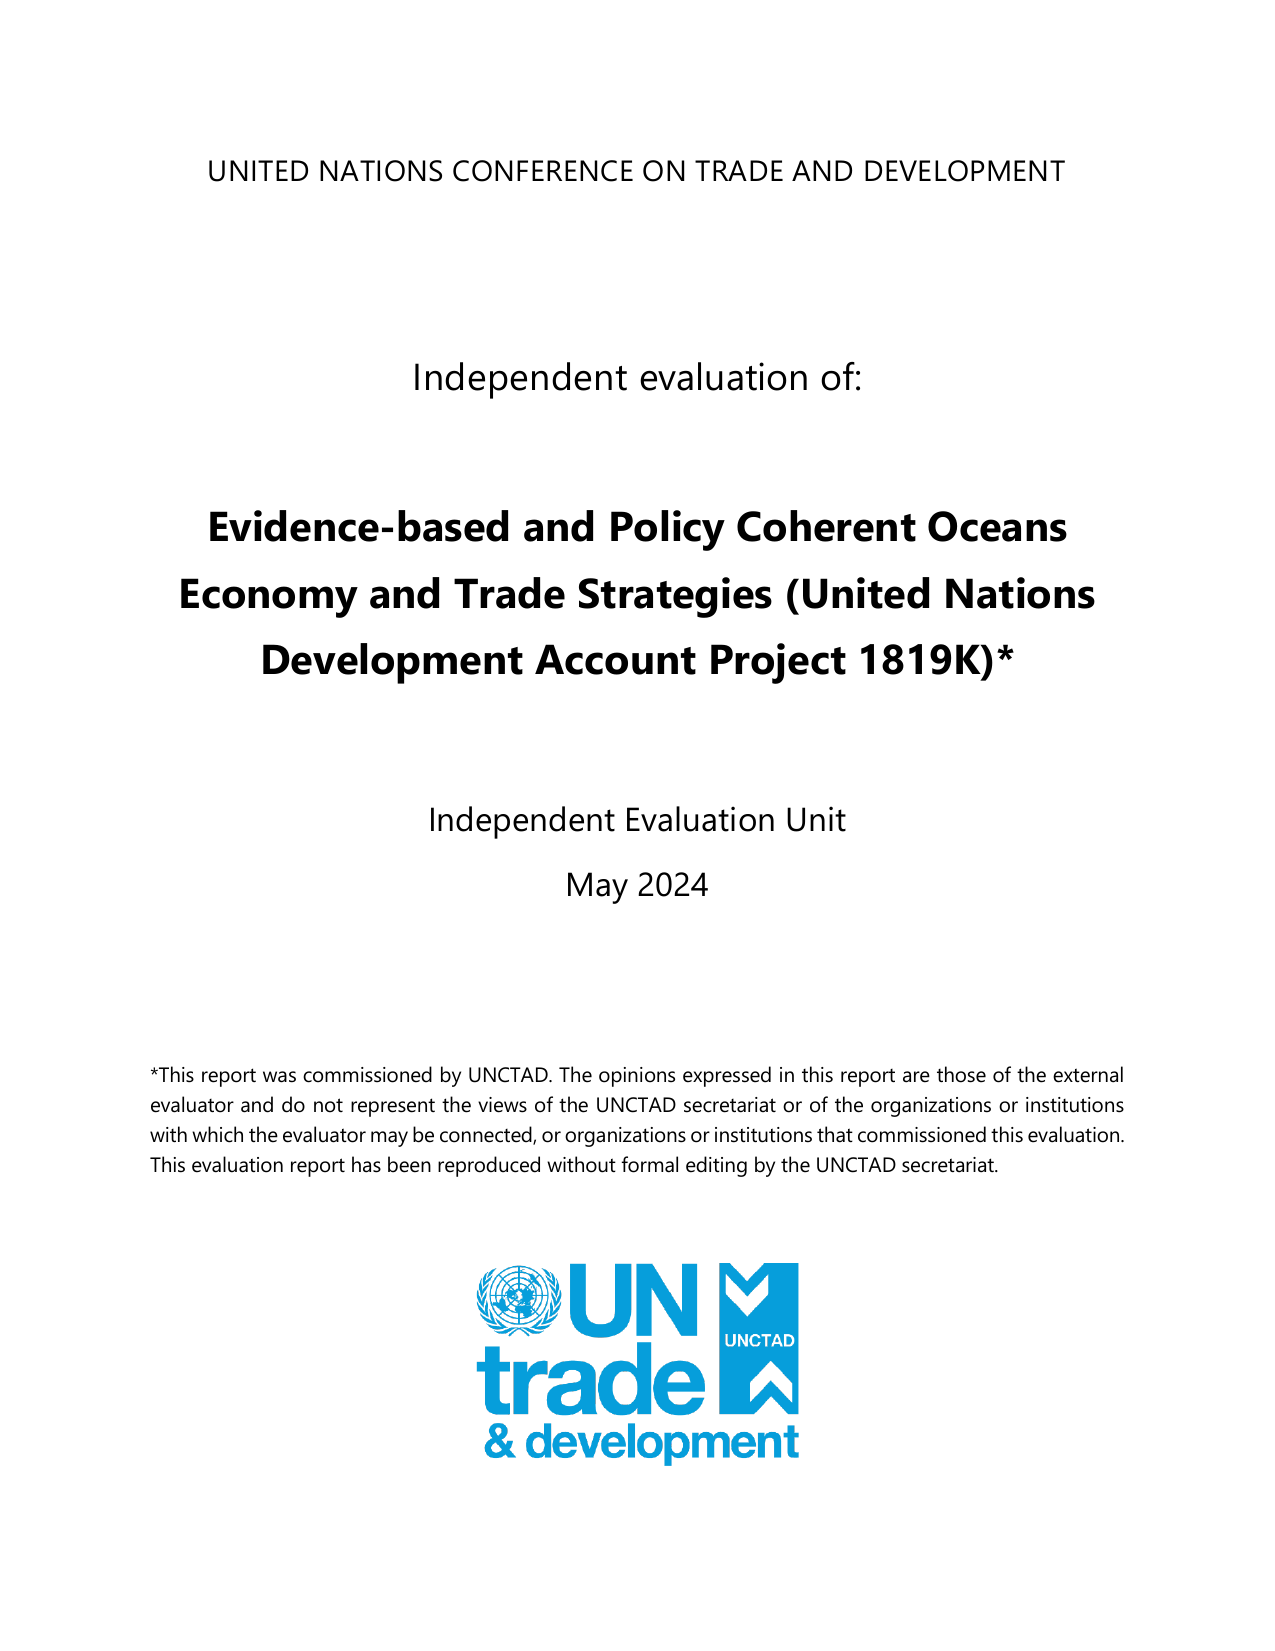 联合国贸易发展委员会-发展账户项目1819K的独立评价：循证和政策一致的海洋经济和贸易战略（英）.pdf